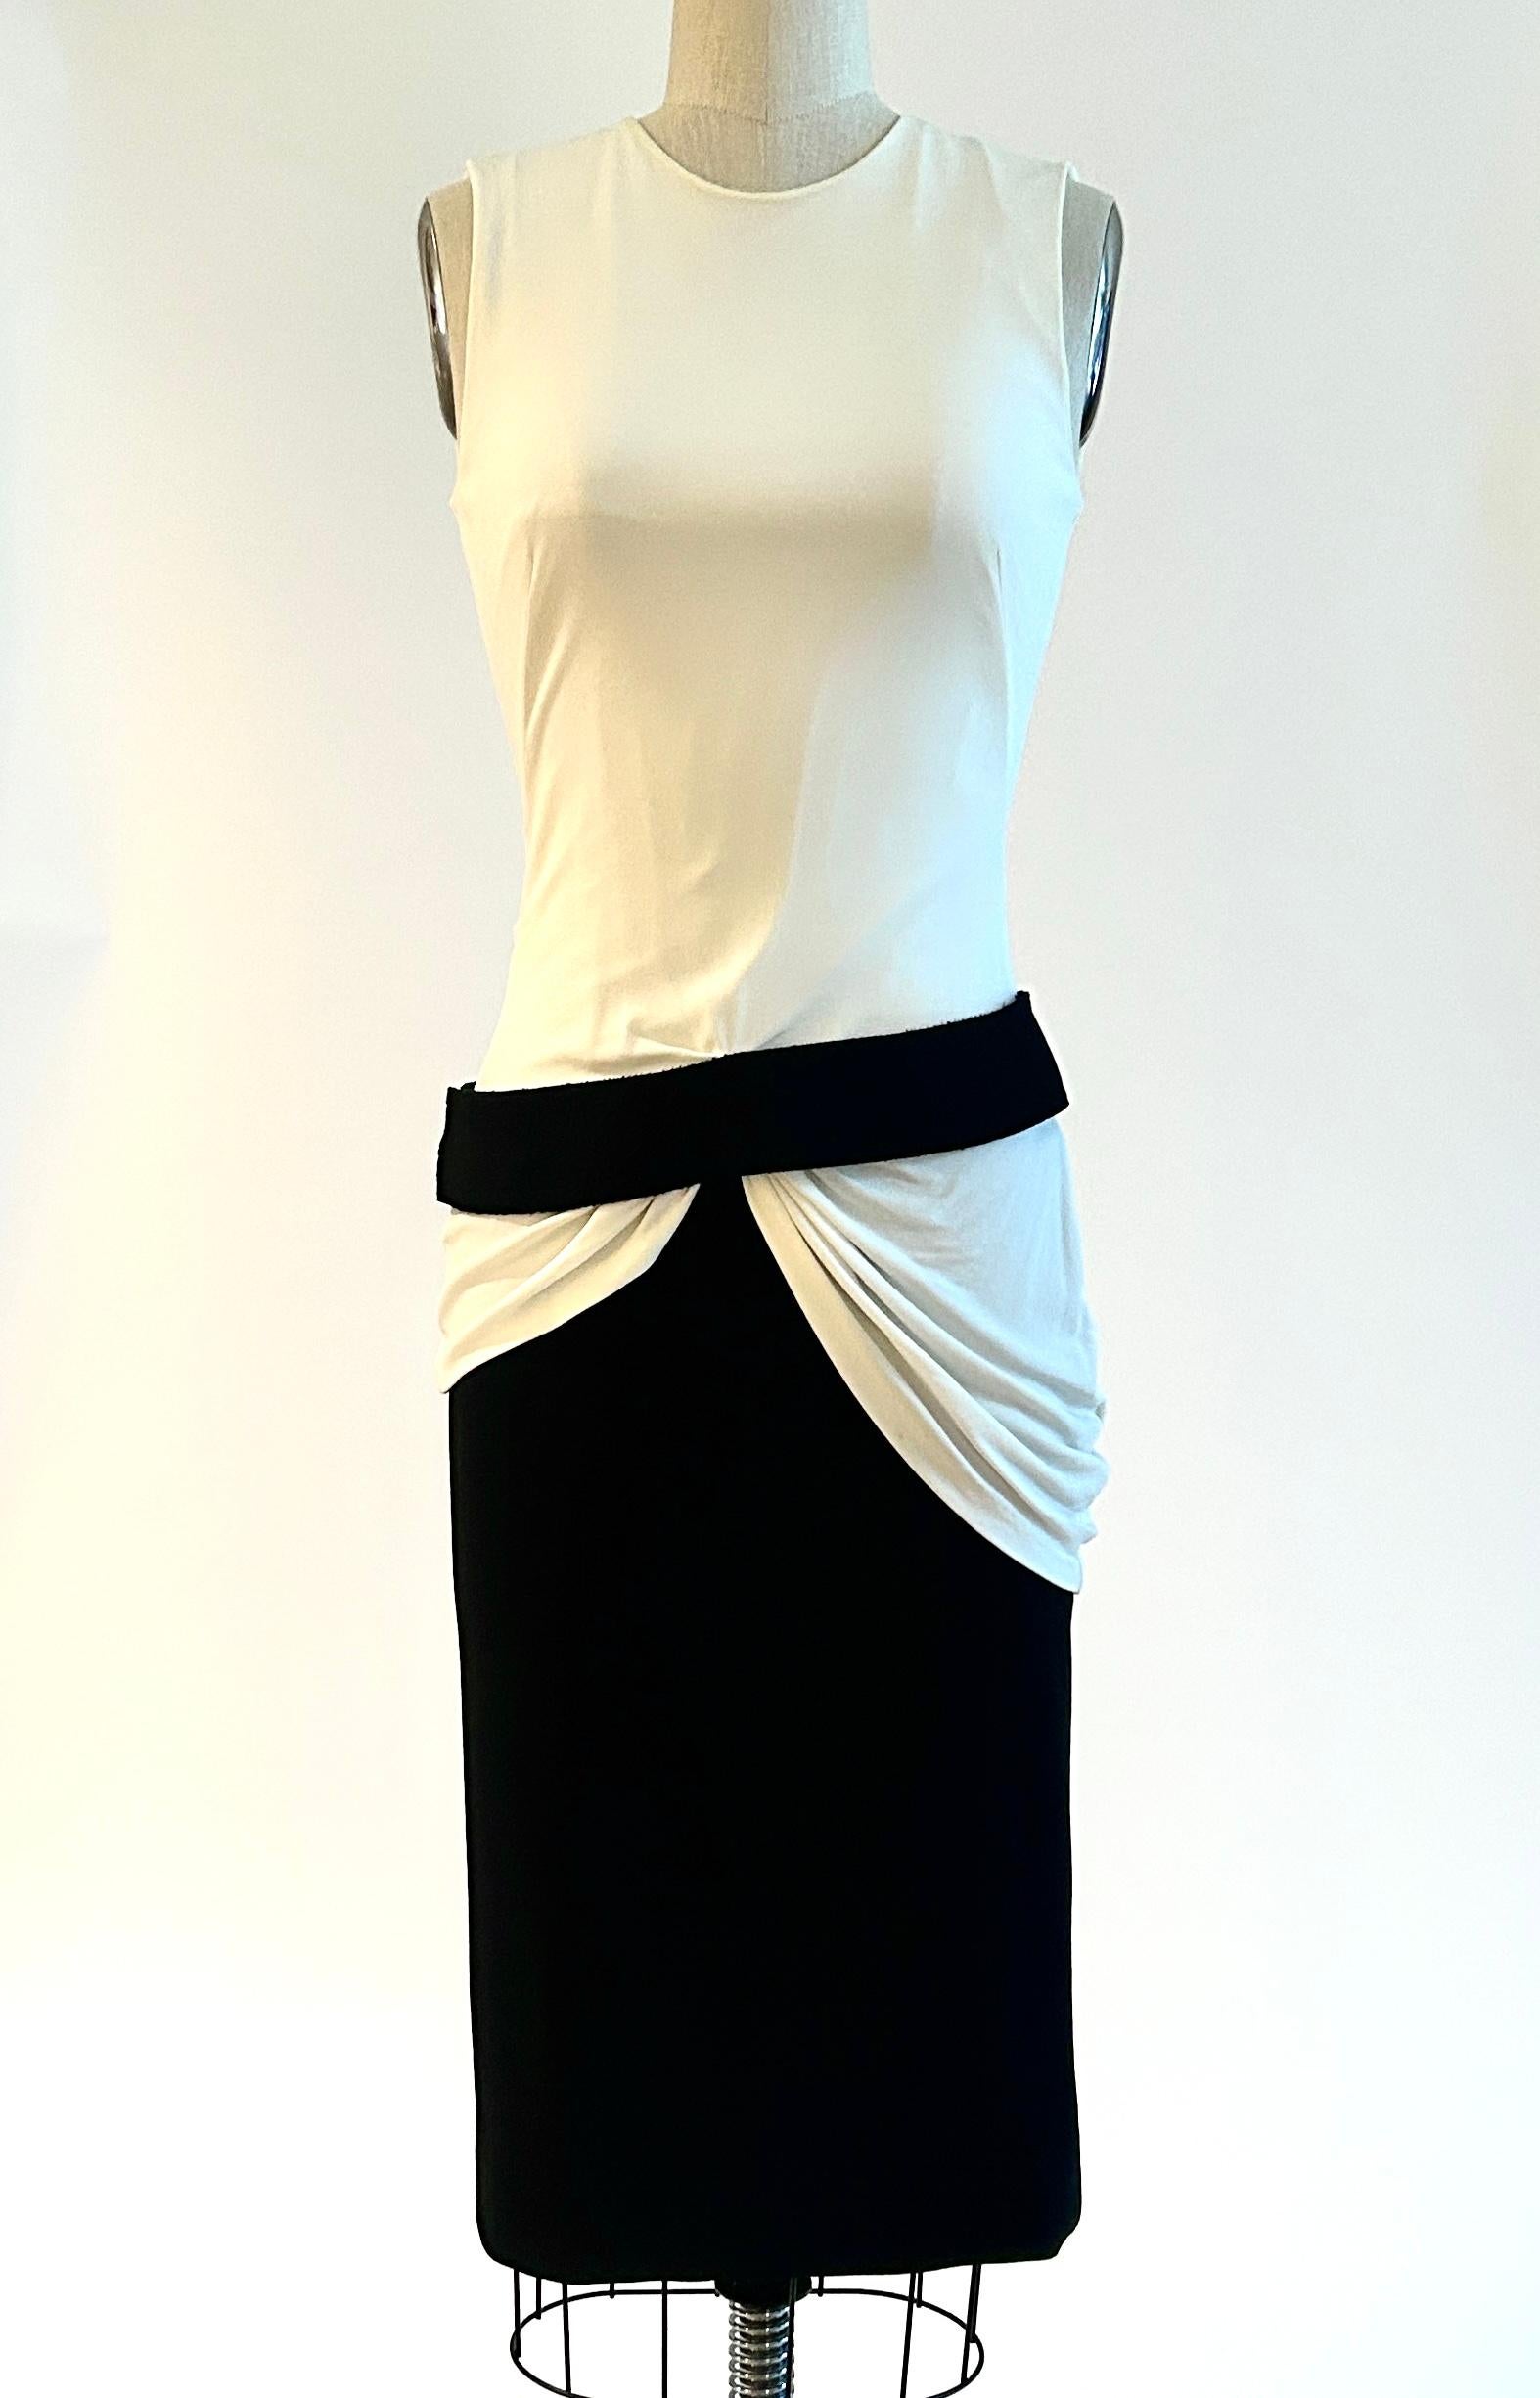 Alexander McQueen ärmelloses Kleid mit weißem, drapiertem Mieder und schwarzem Unterteil mit befestigtem Gürtel an der Hüfte. Circa 2013. Unterhalb des Knies liegend. Rückenreißverschluss und Haken und Ösen mit drei Druckknöpfen am Gürtel. 

Stoff